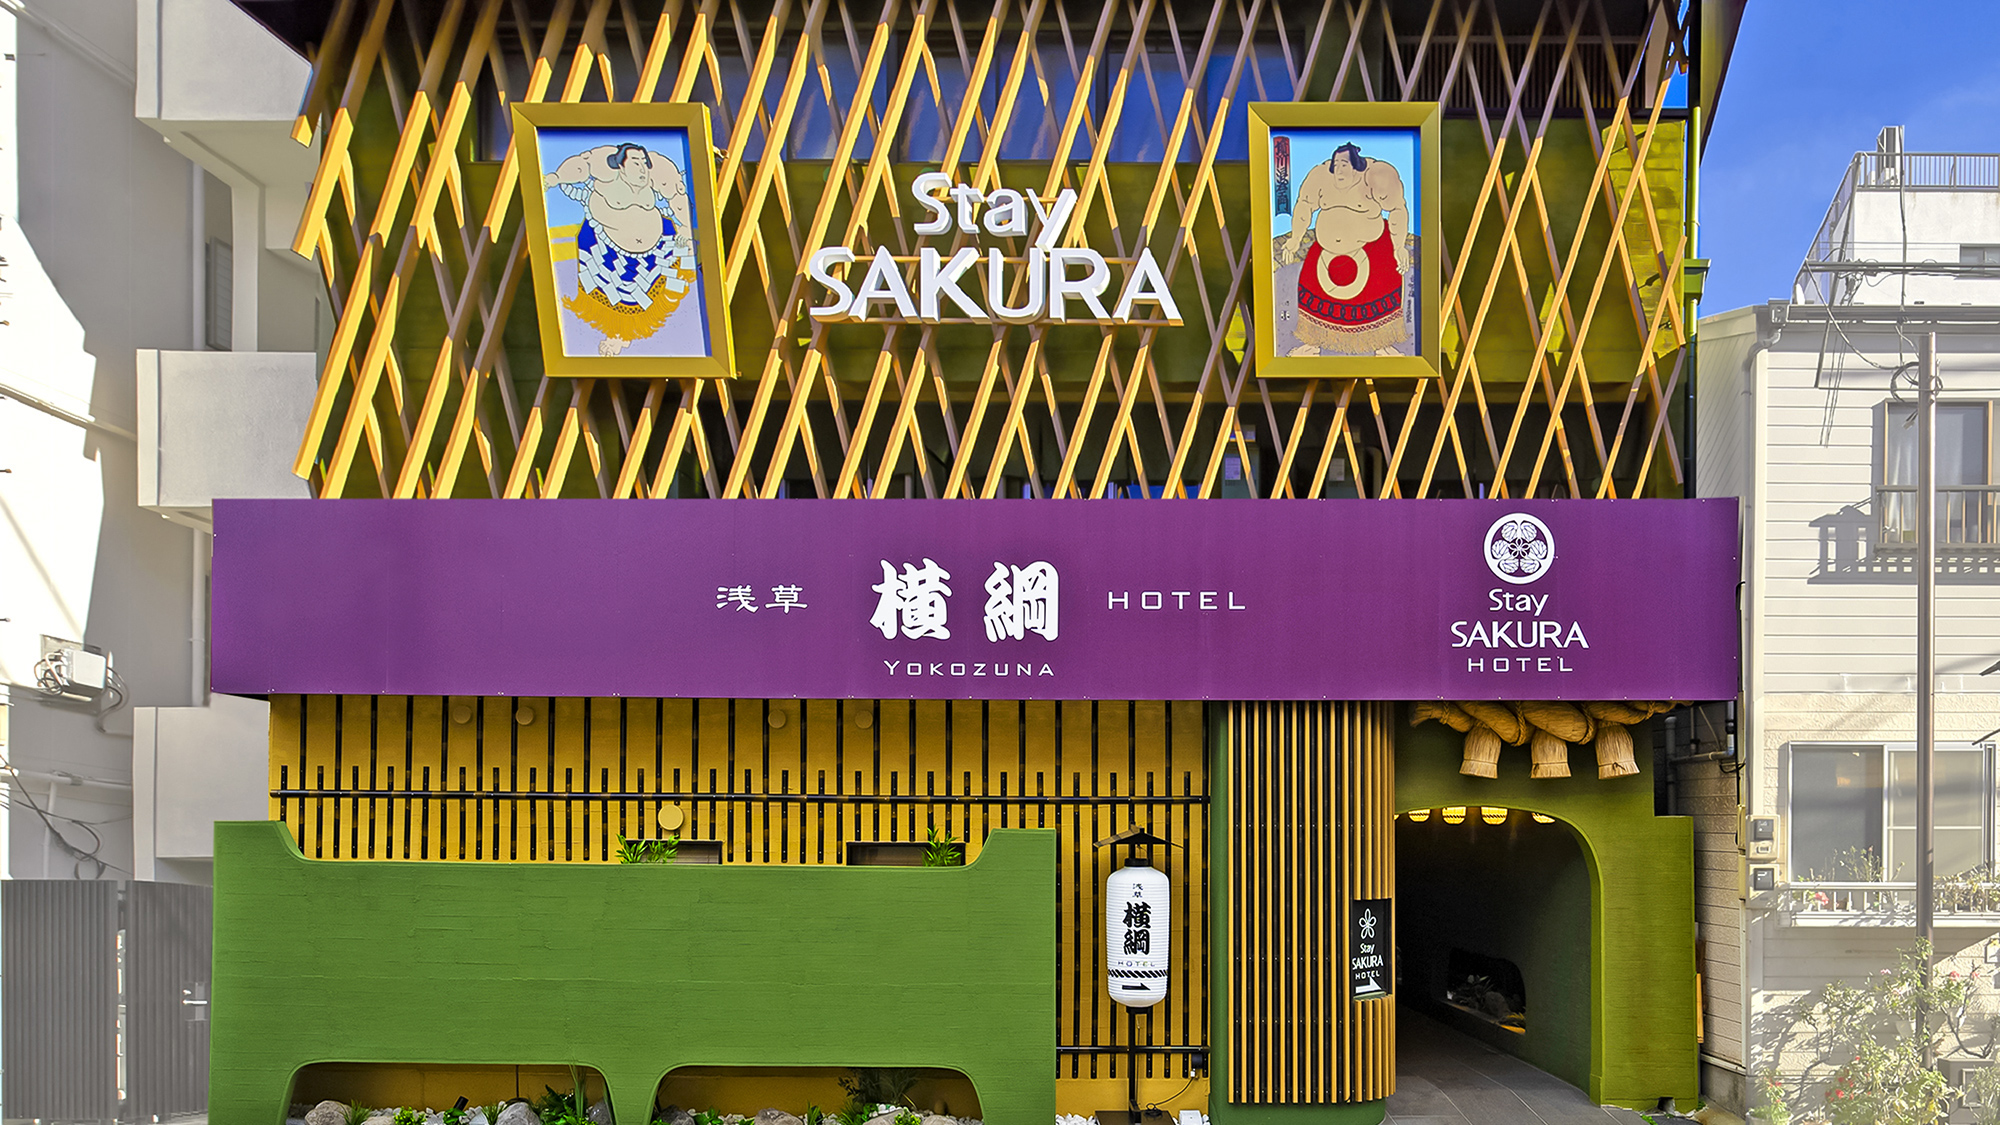 Stay Sakura Tokyo Asakusa Yokozuna Hotel